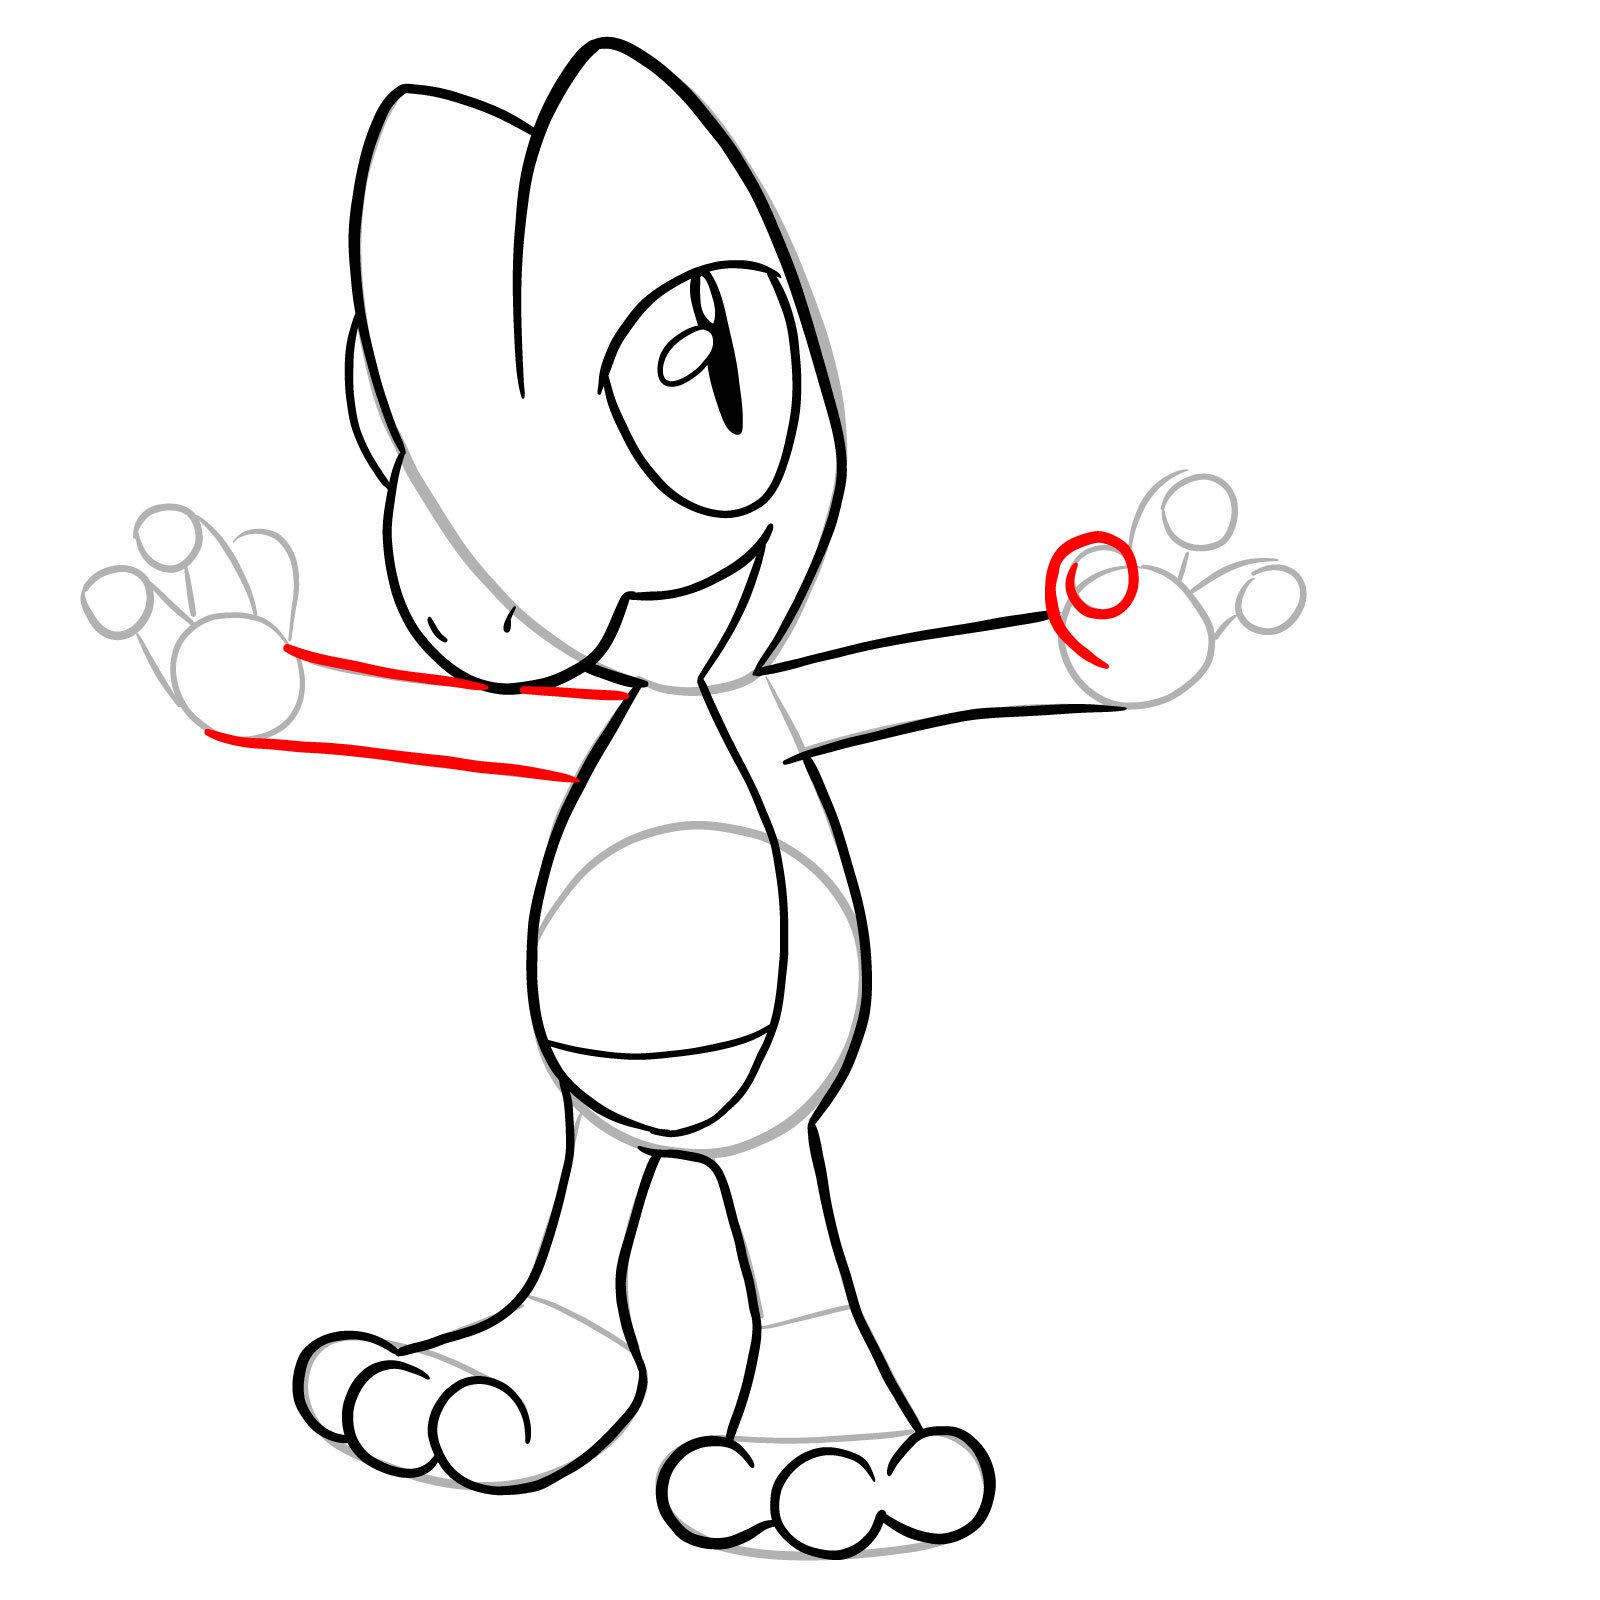 How to draw Treecko Pokemon - step 19